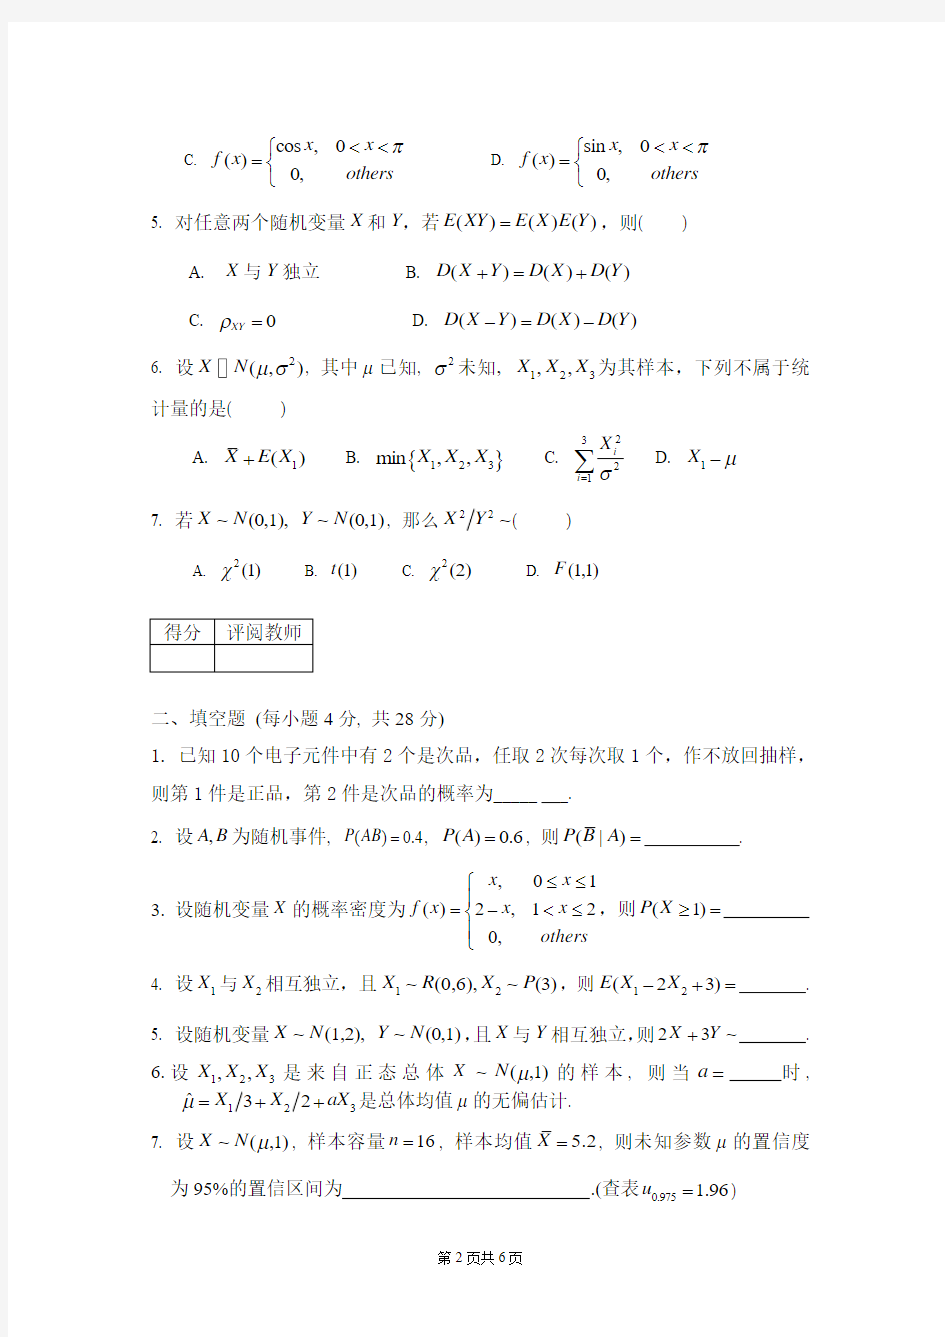 四川理工学院 概率与统计(15-16-1)A卷